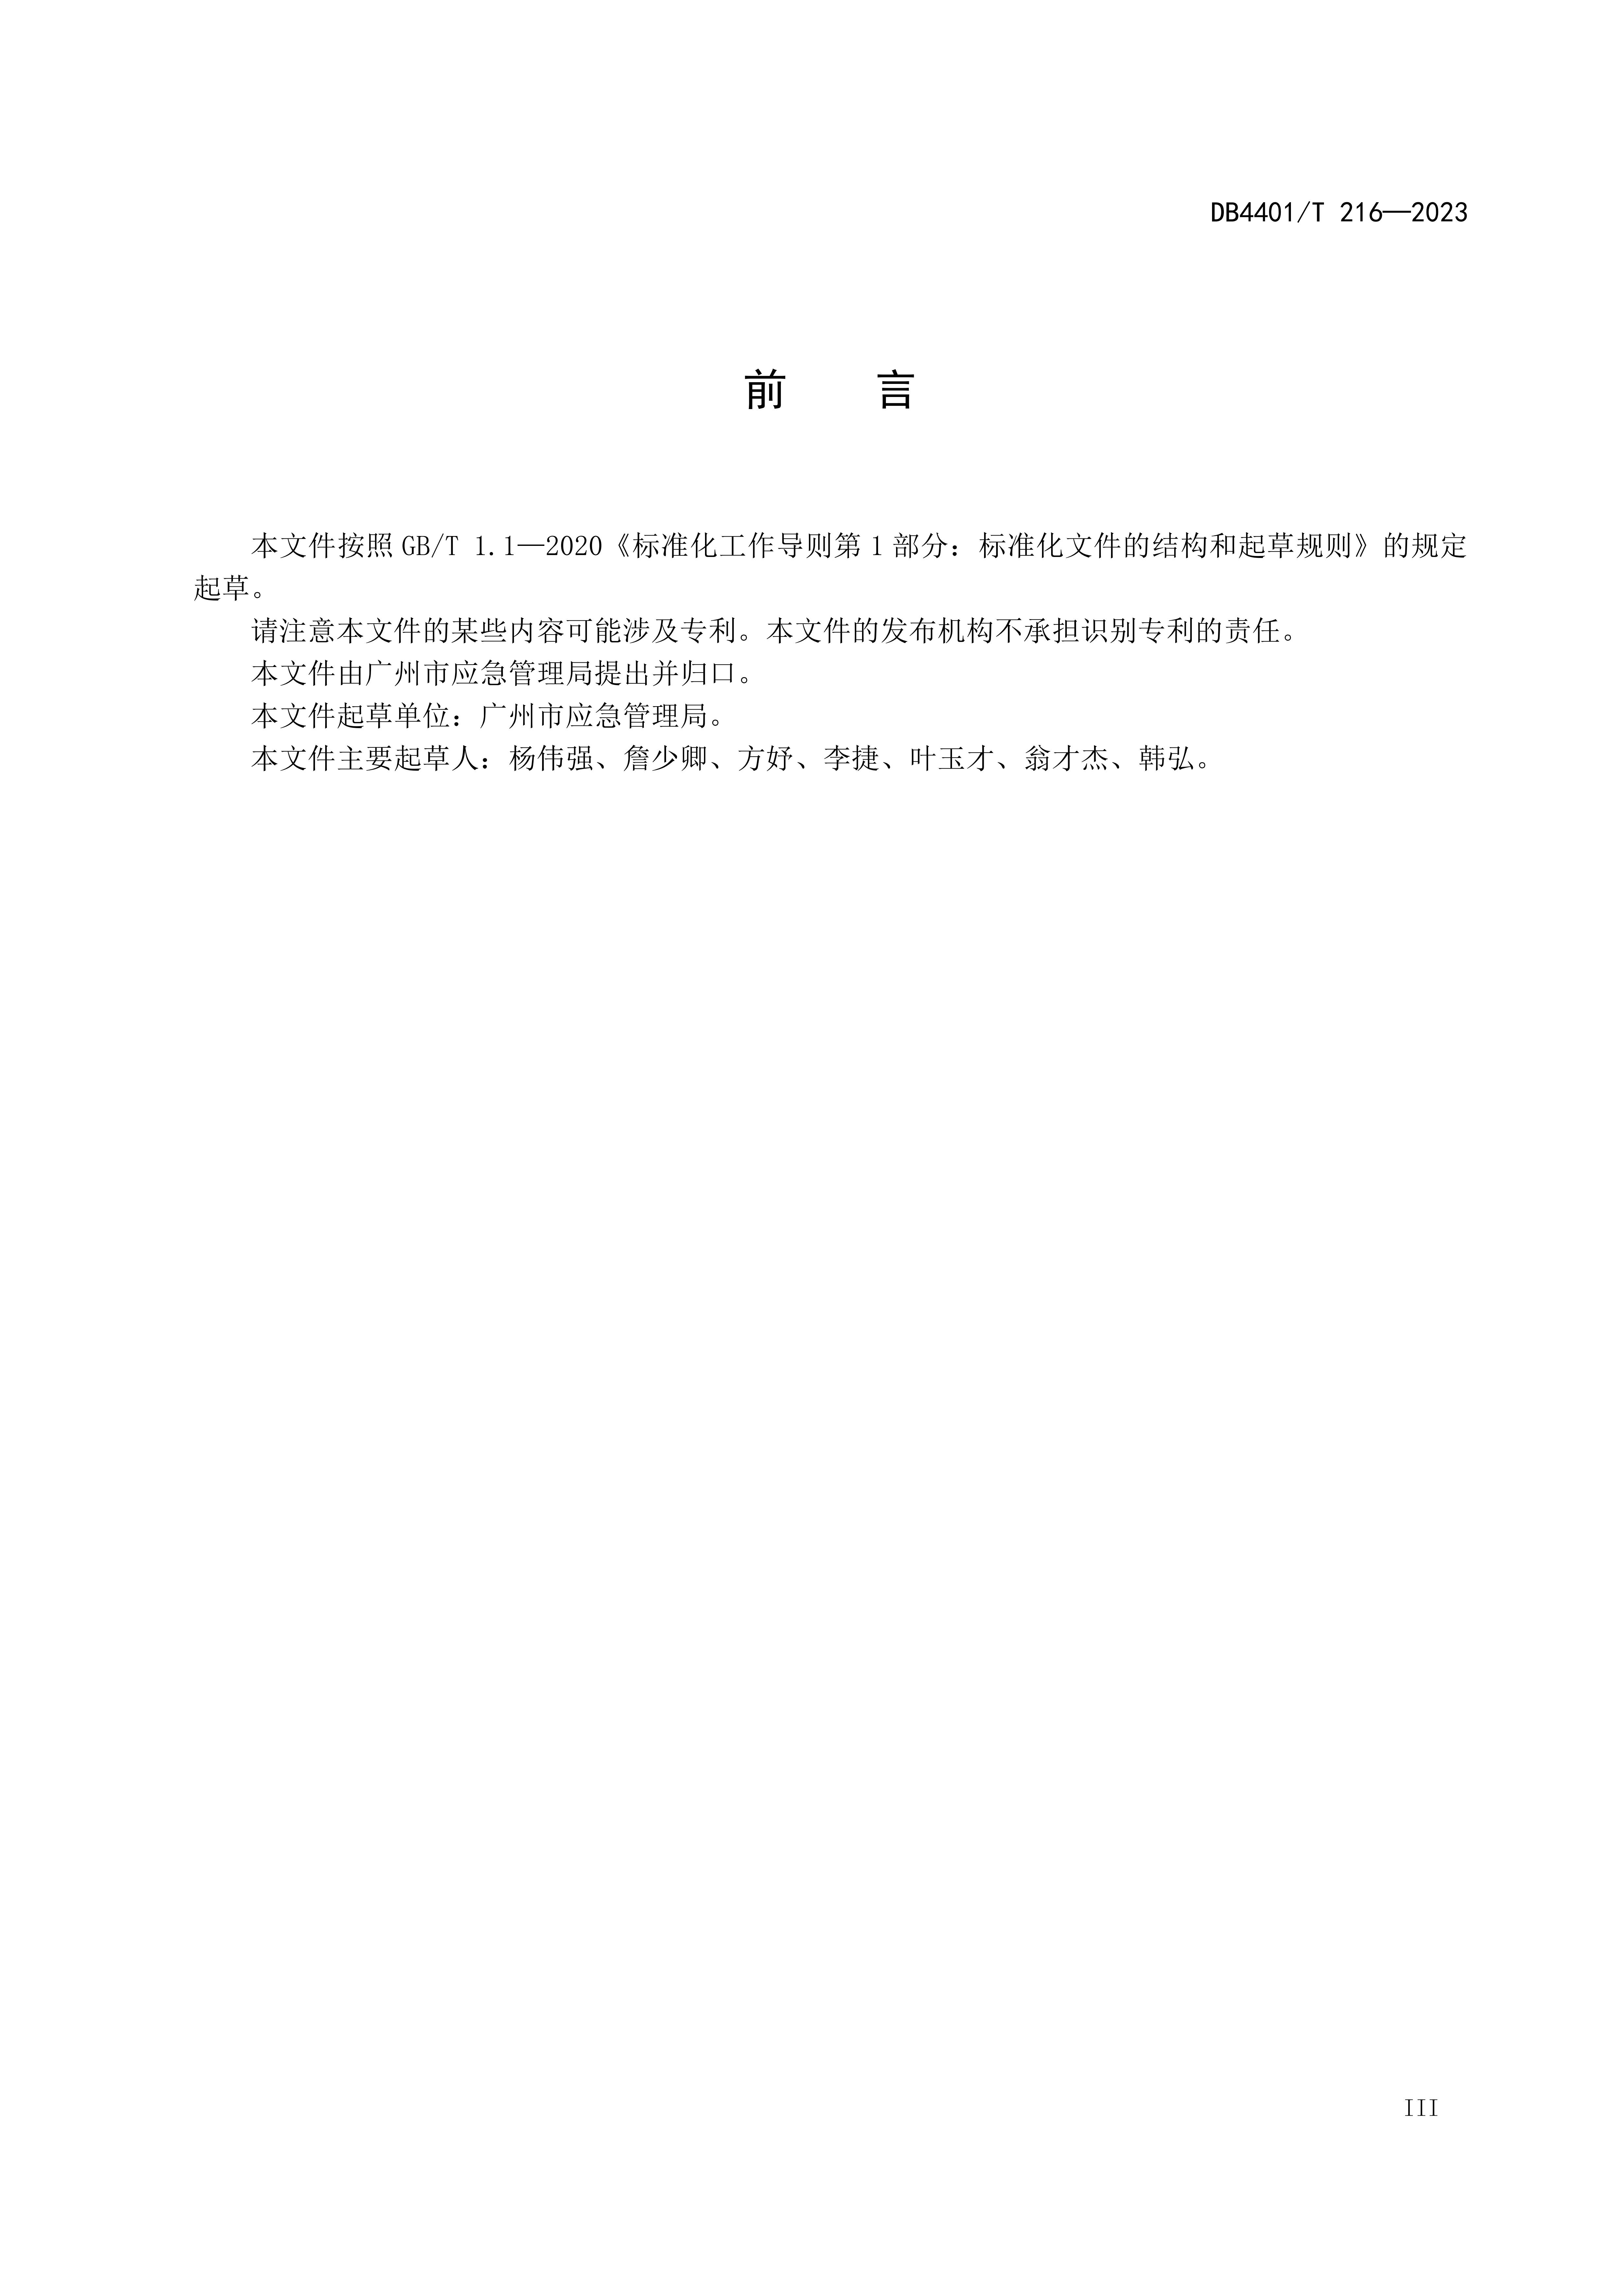 (终稿 发布稿)广州市地方标准《安全宣传“五进”工作规范》20230625_04.jpg